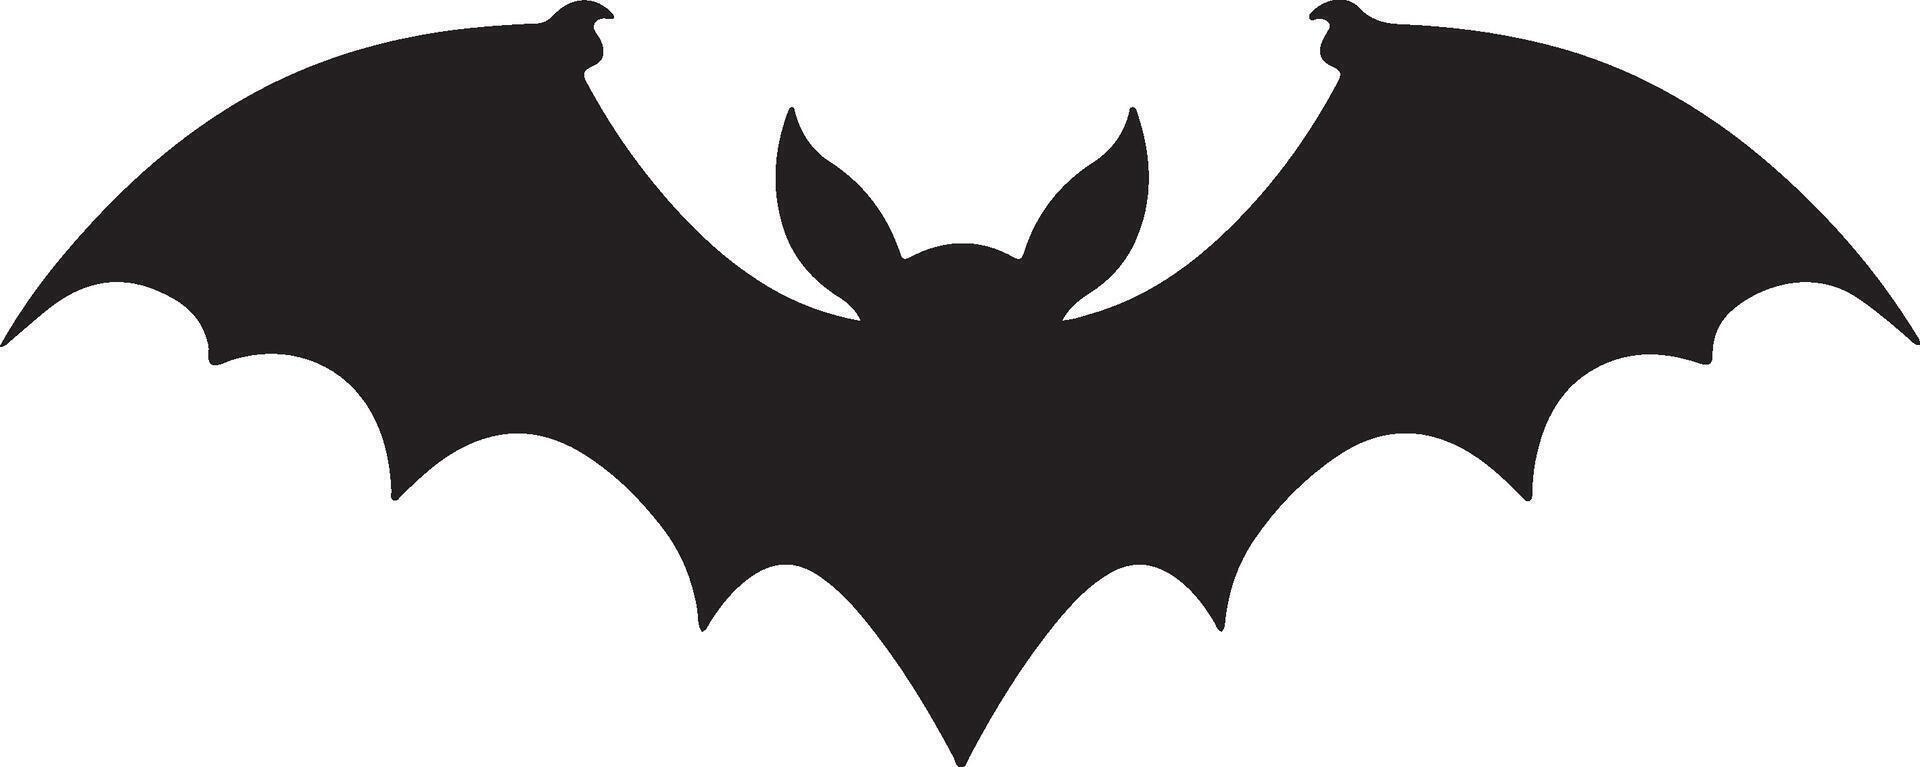 pipistrello silhouette vettore illustrazione bianca sfondo